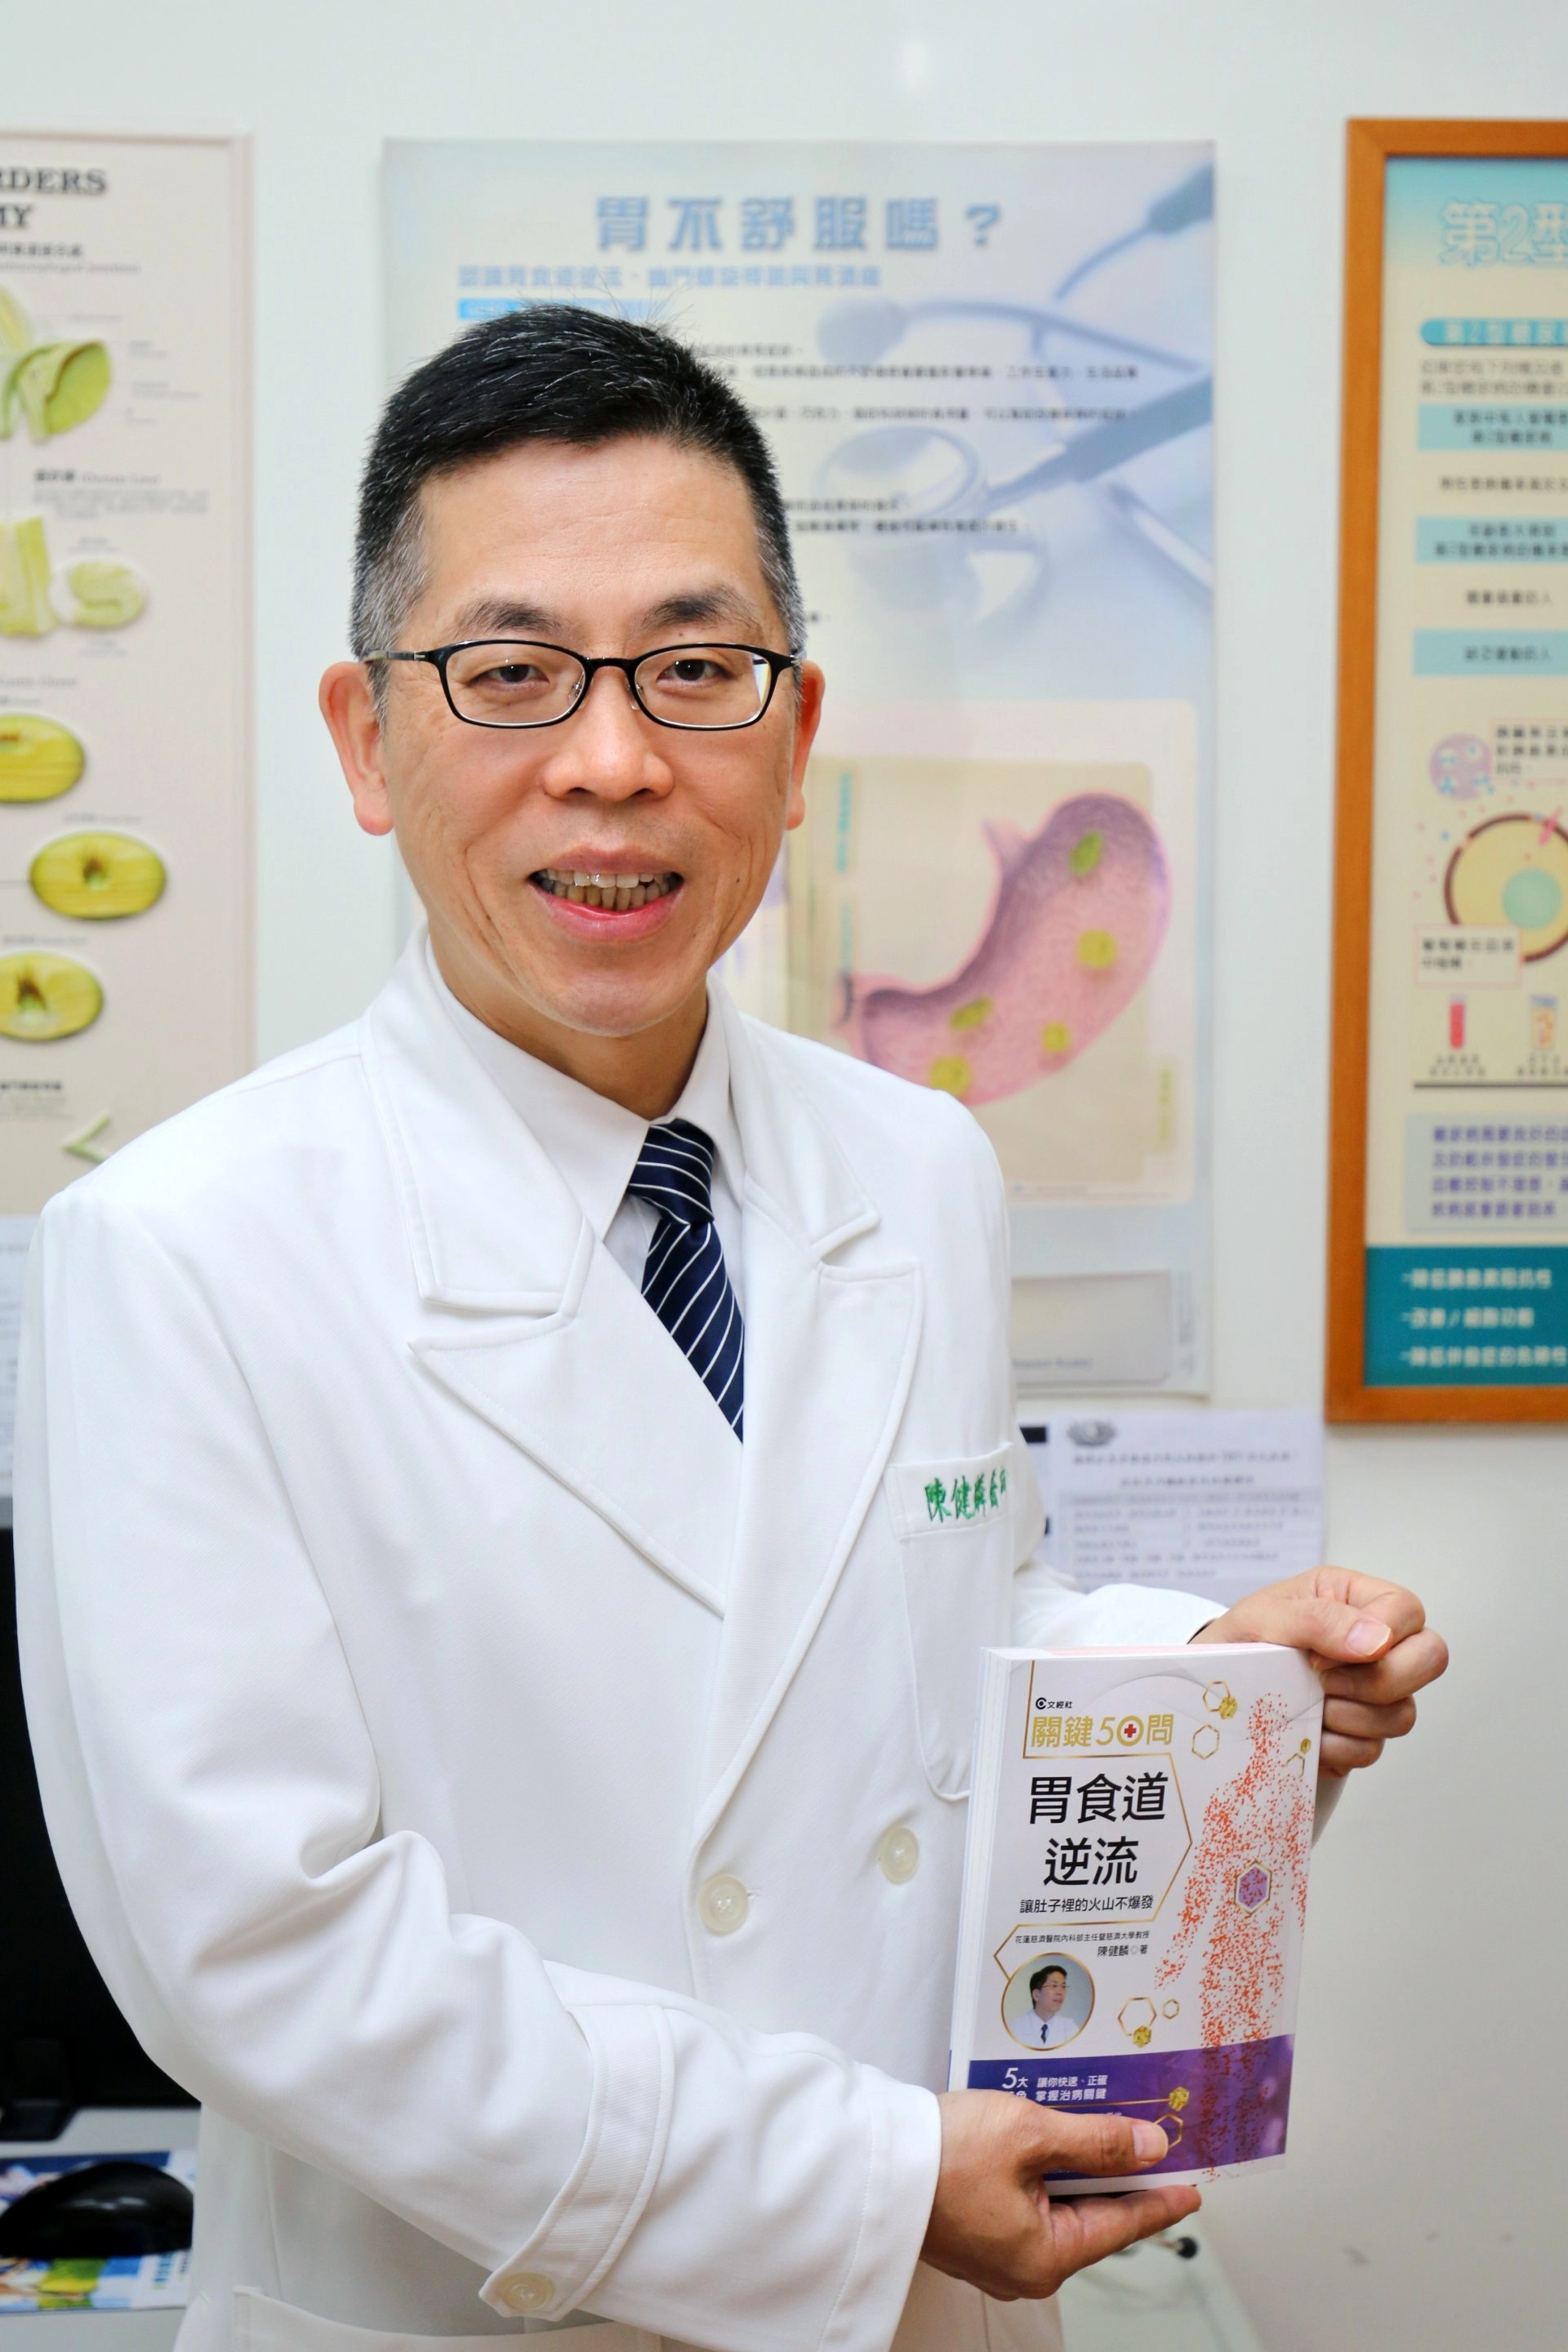 花蓮慈濟醫院肝膽腸胃科主任陳健麟教授致力於胃食道逆流症研究，住書之外，帶領團隊醫師與AI中心成功開發胃食道逆流症精準診斷模型。